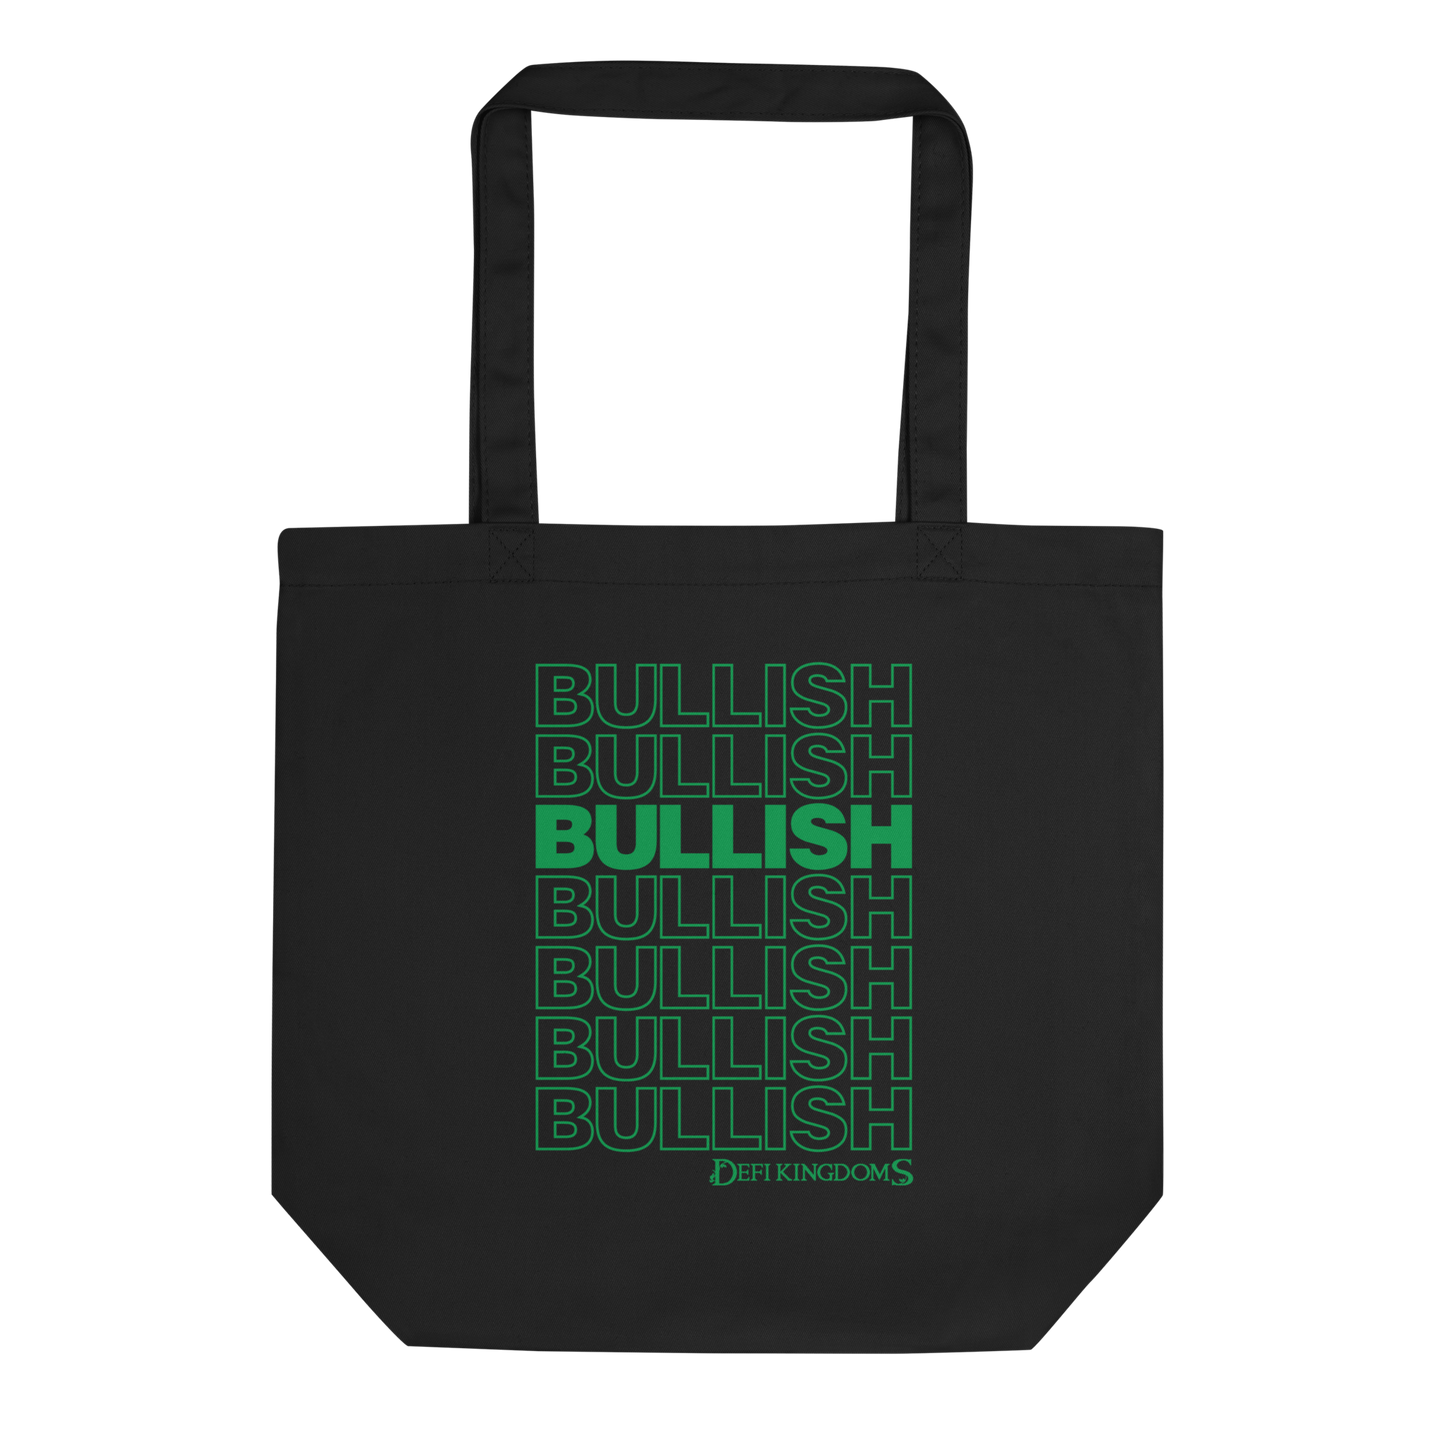 Bullish Green Print Tote Bag